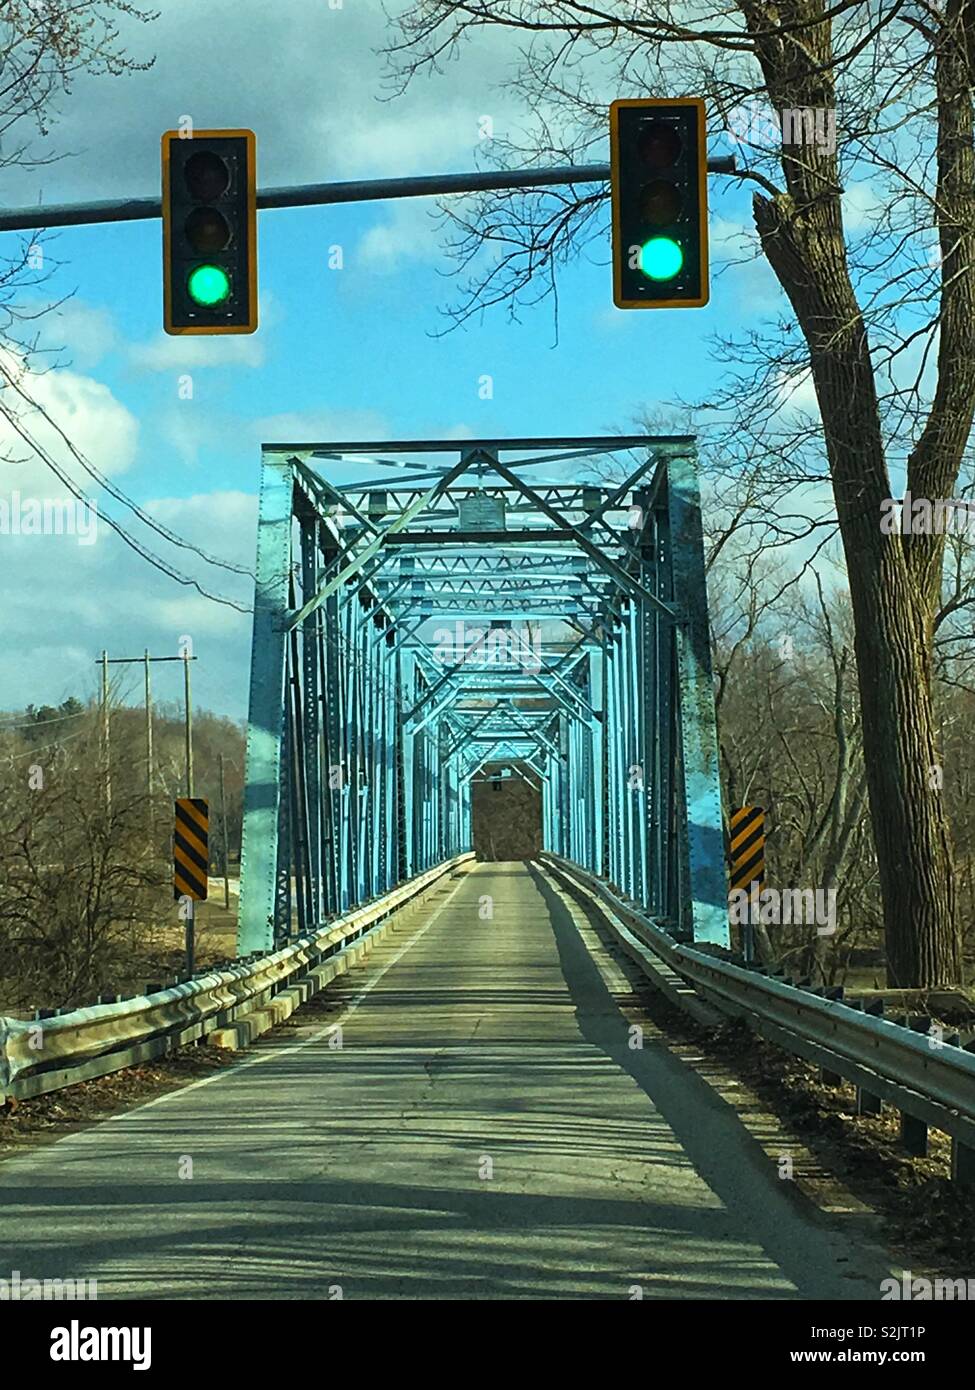 Brücke mit einer Fahrbahn und einer Ampel, erlaubt nur eine Art und Weise, wie der Verkehr den Fluss zu überqueren. Stockfoto